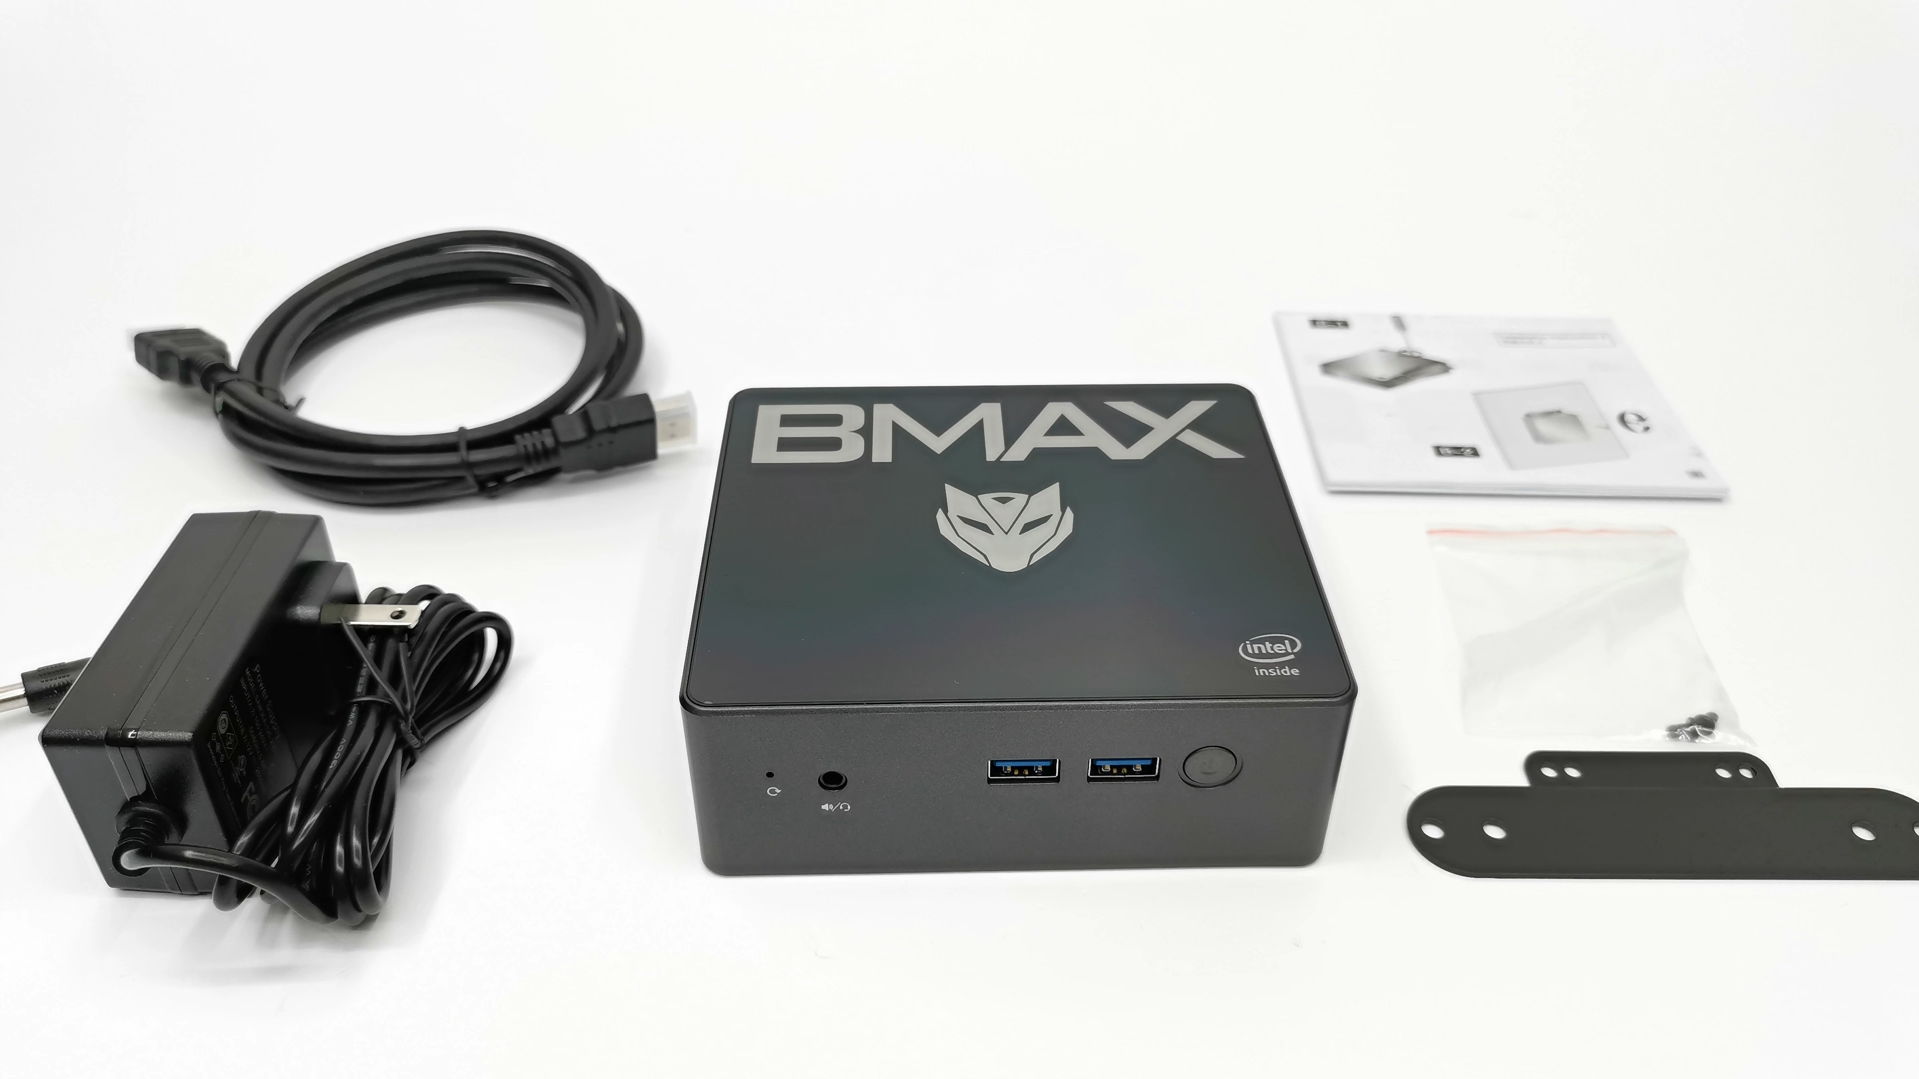 BMAX B2 in the box